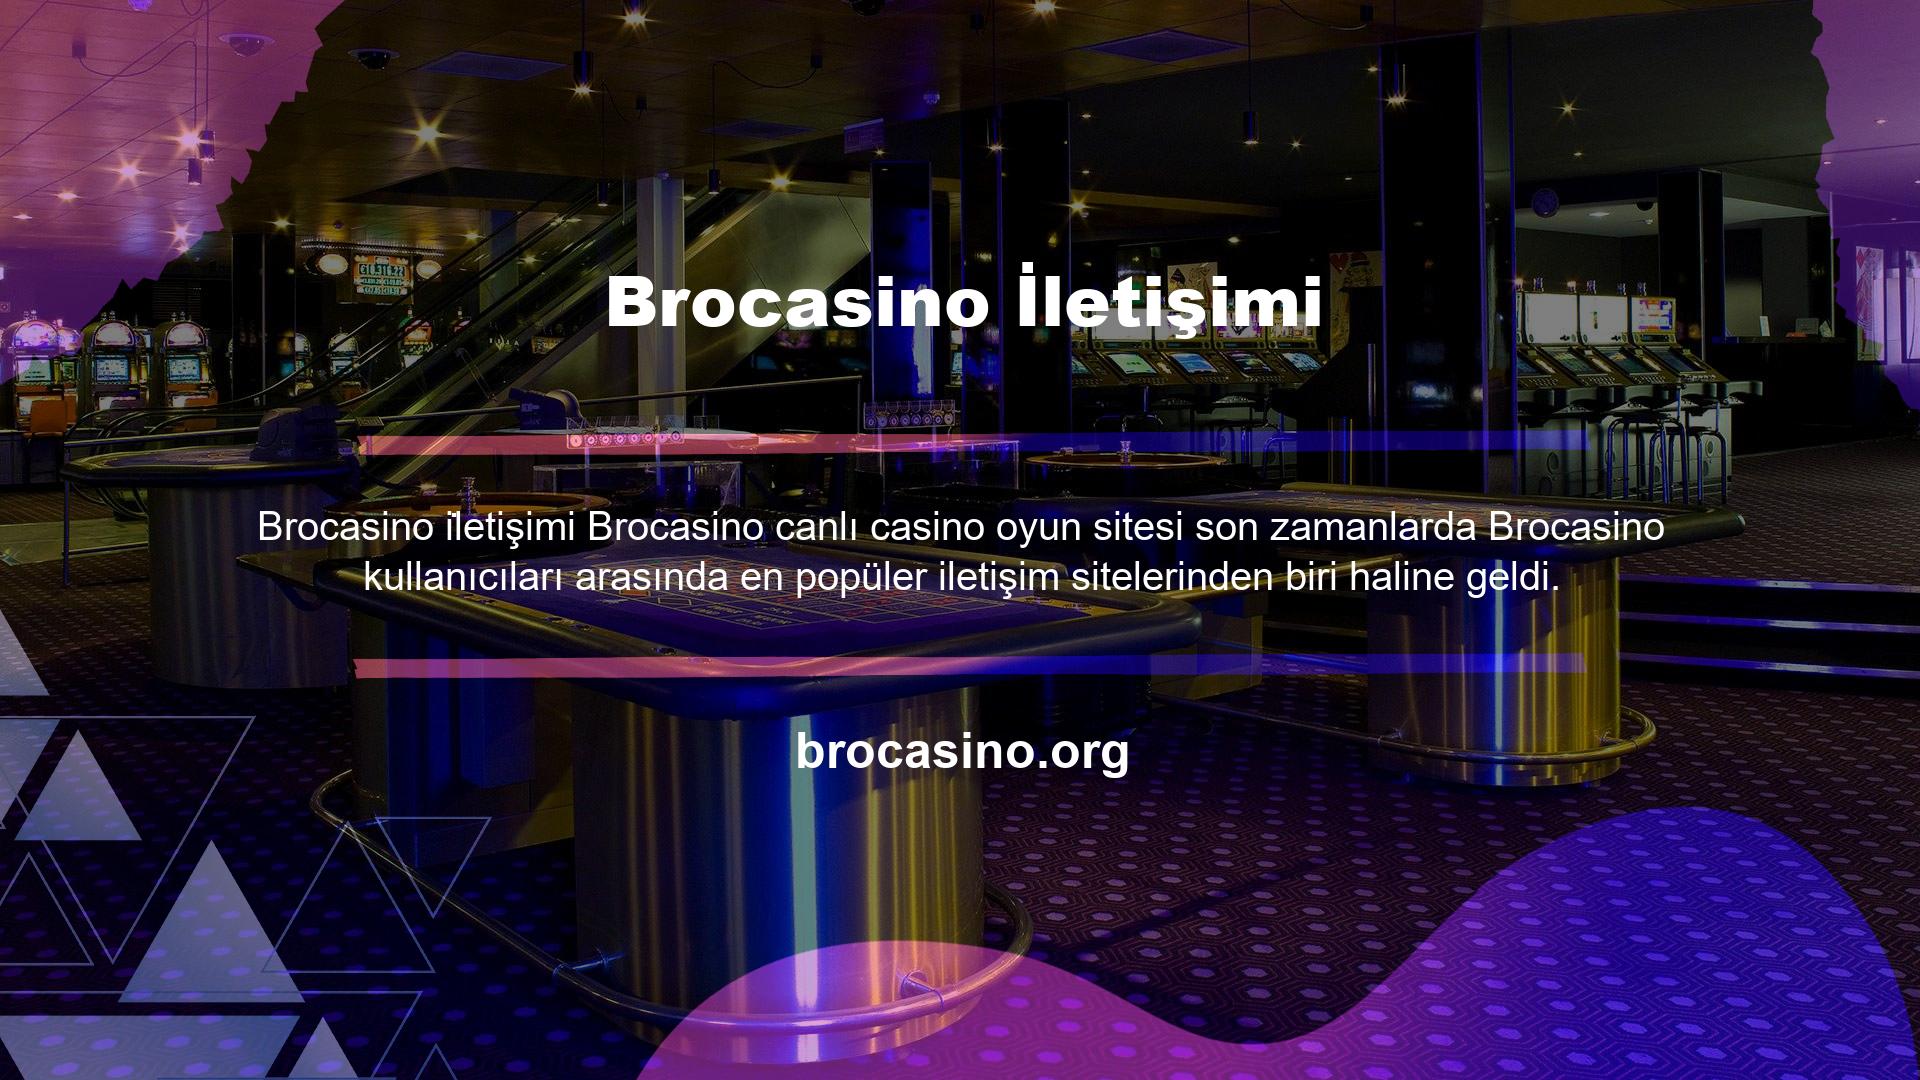 Brocasino yeni adresi üzerinden yatırım yapanları benzersiz bir teşvik bekliyor